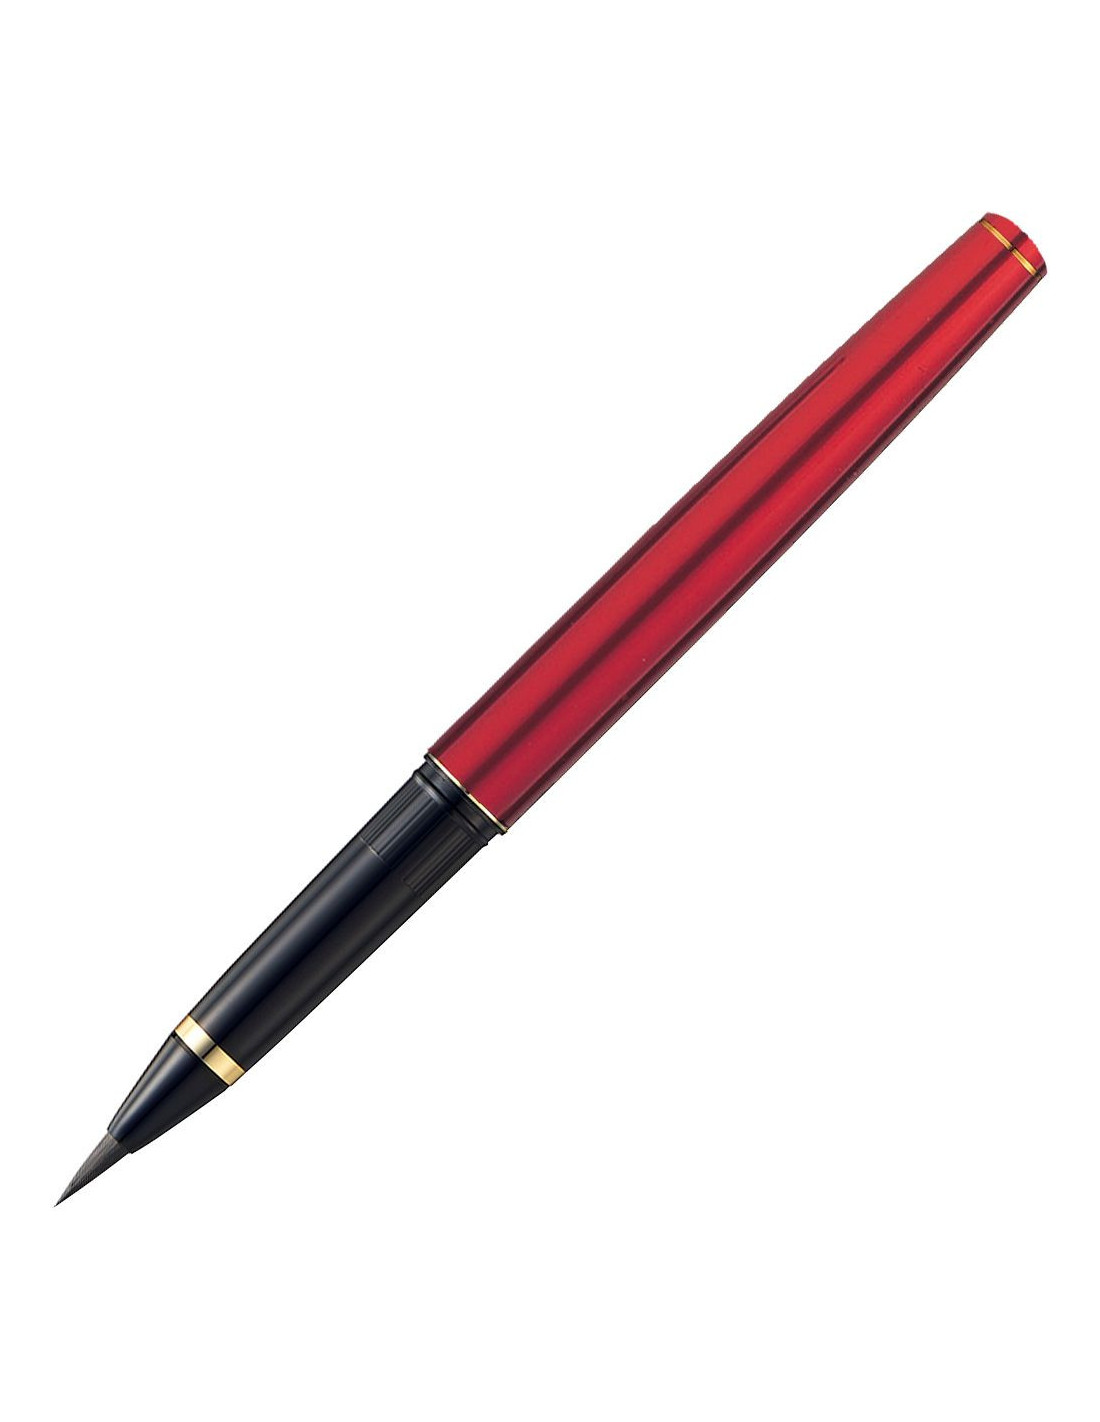 Kuretake Mannen Mouhitsu Brush Pen No. 13 Red